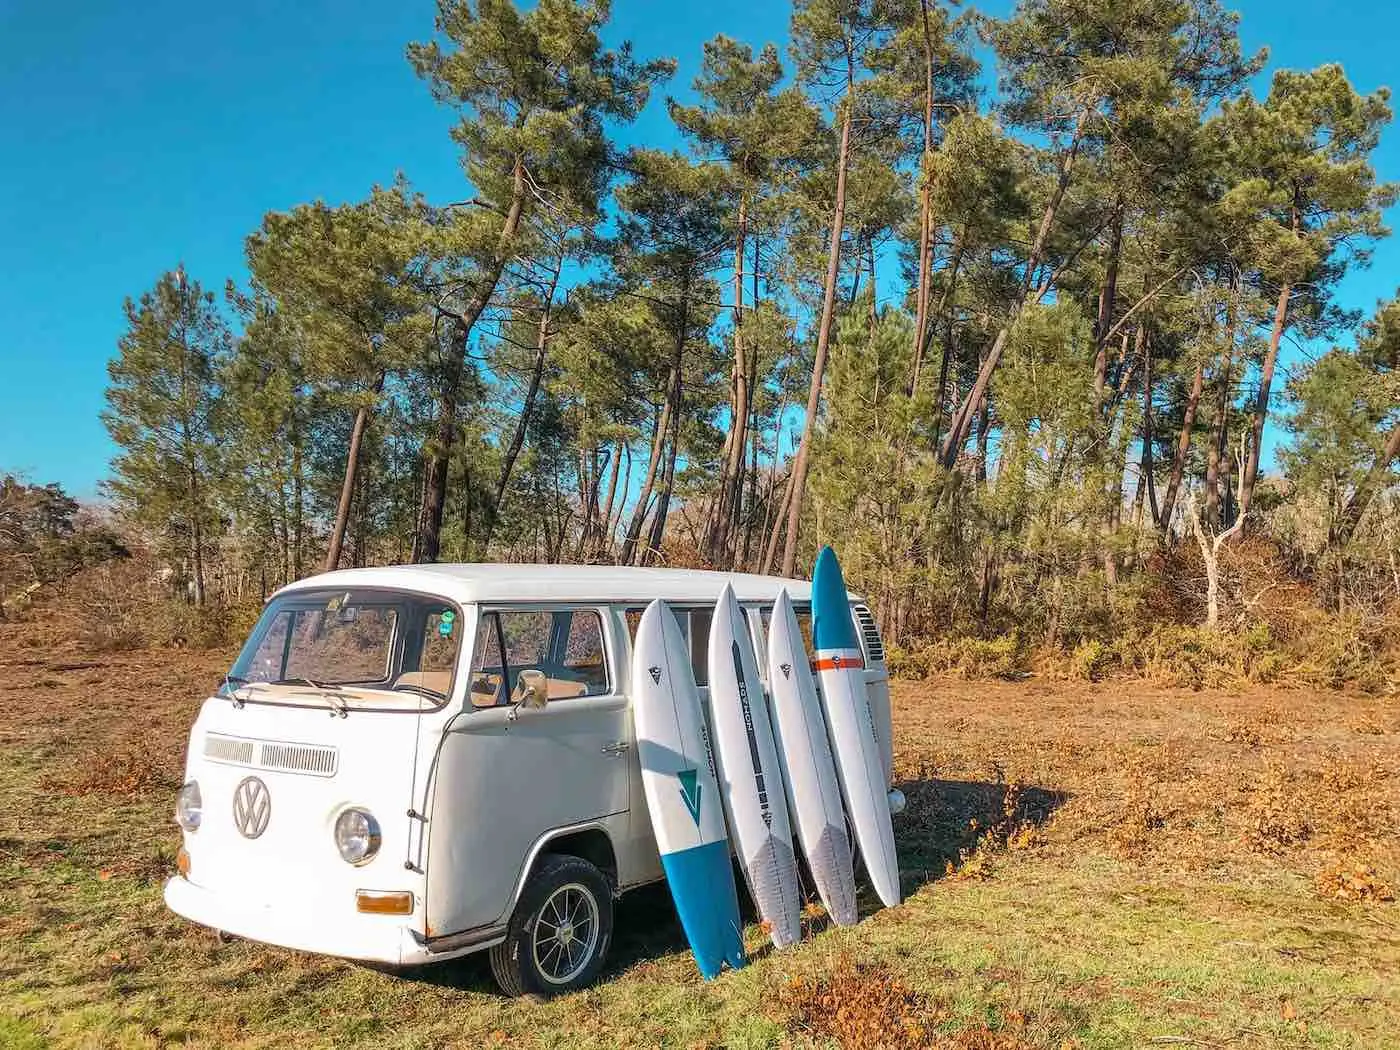 À Bordeaux, Nomads Surfing crée des planches de surf à partir de déchets recyclés